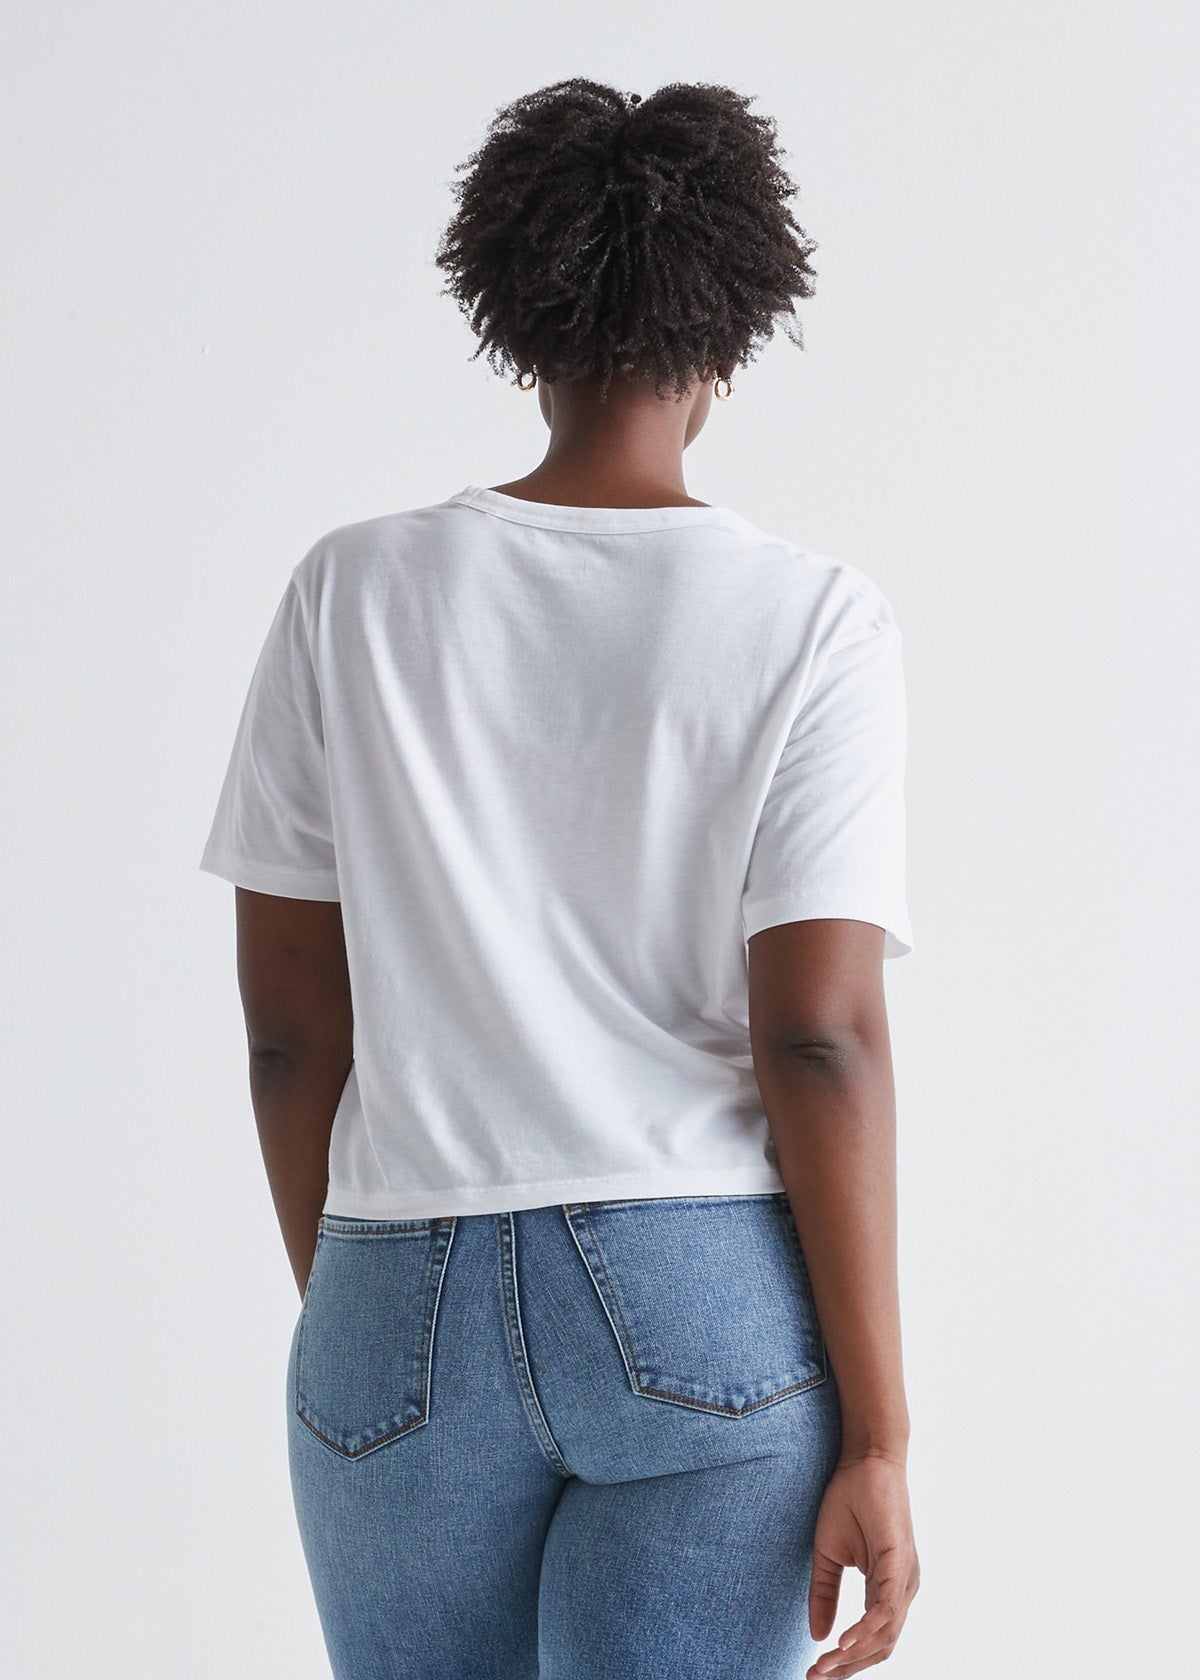 Women's white lightweight soft crop tshirt back